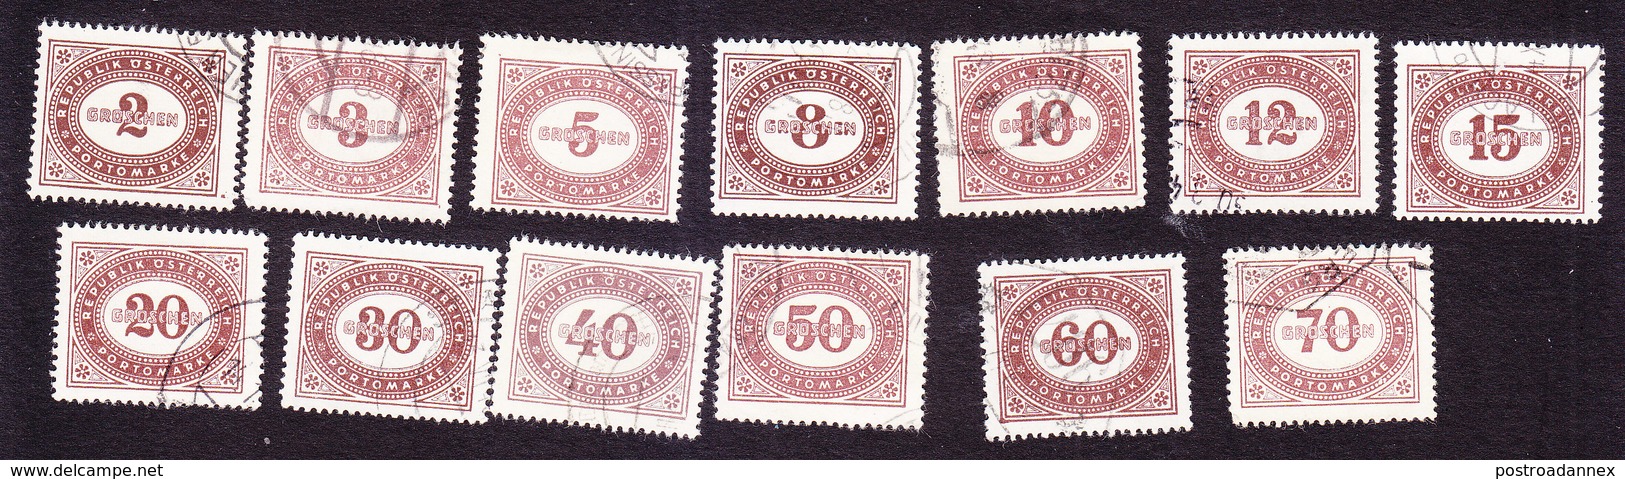 Austria, Scott #J205-J211, J215, J217, J219, J222-J224, Used, Postage Due, Issued 1947 - Postage Due